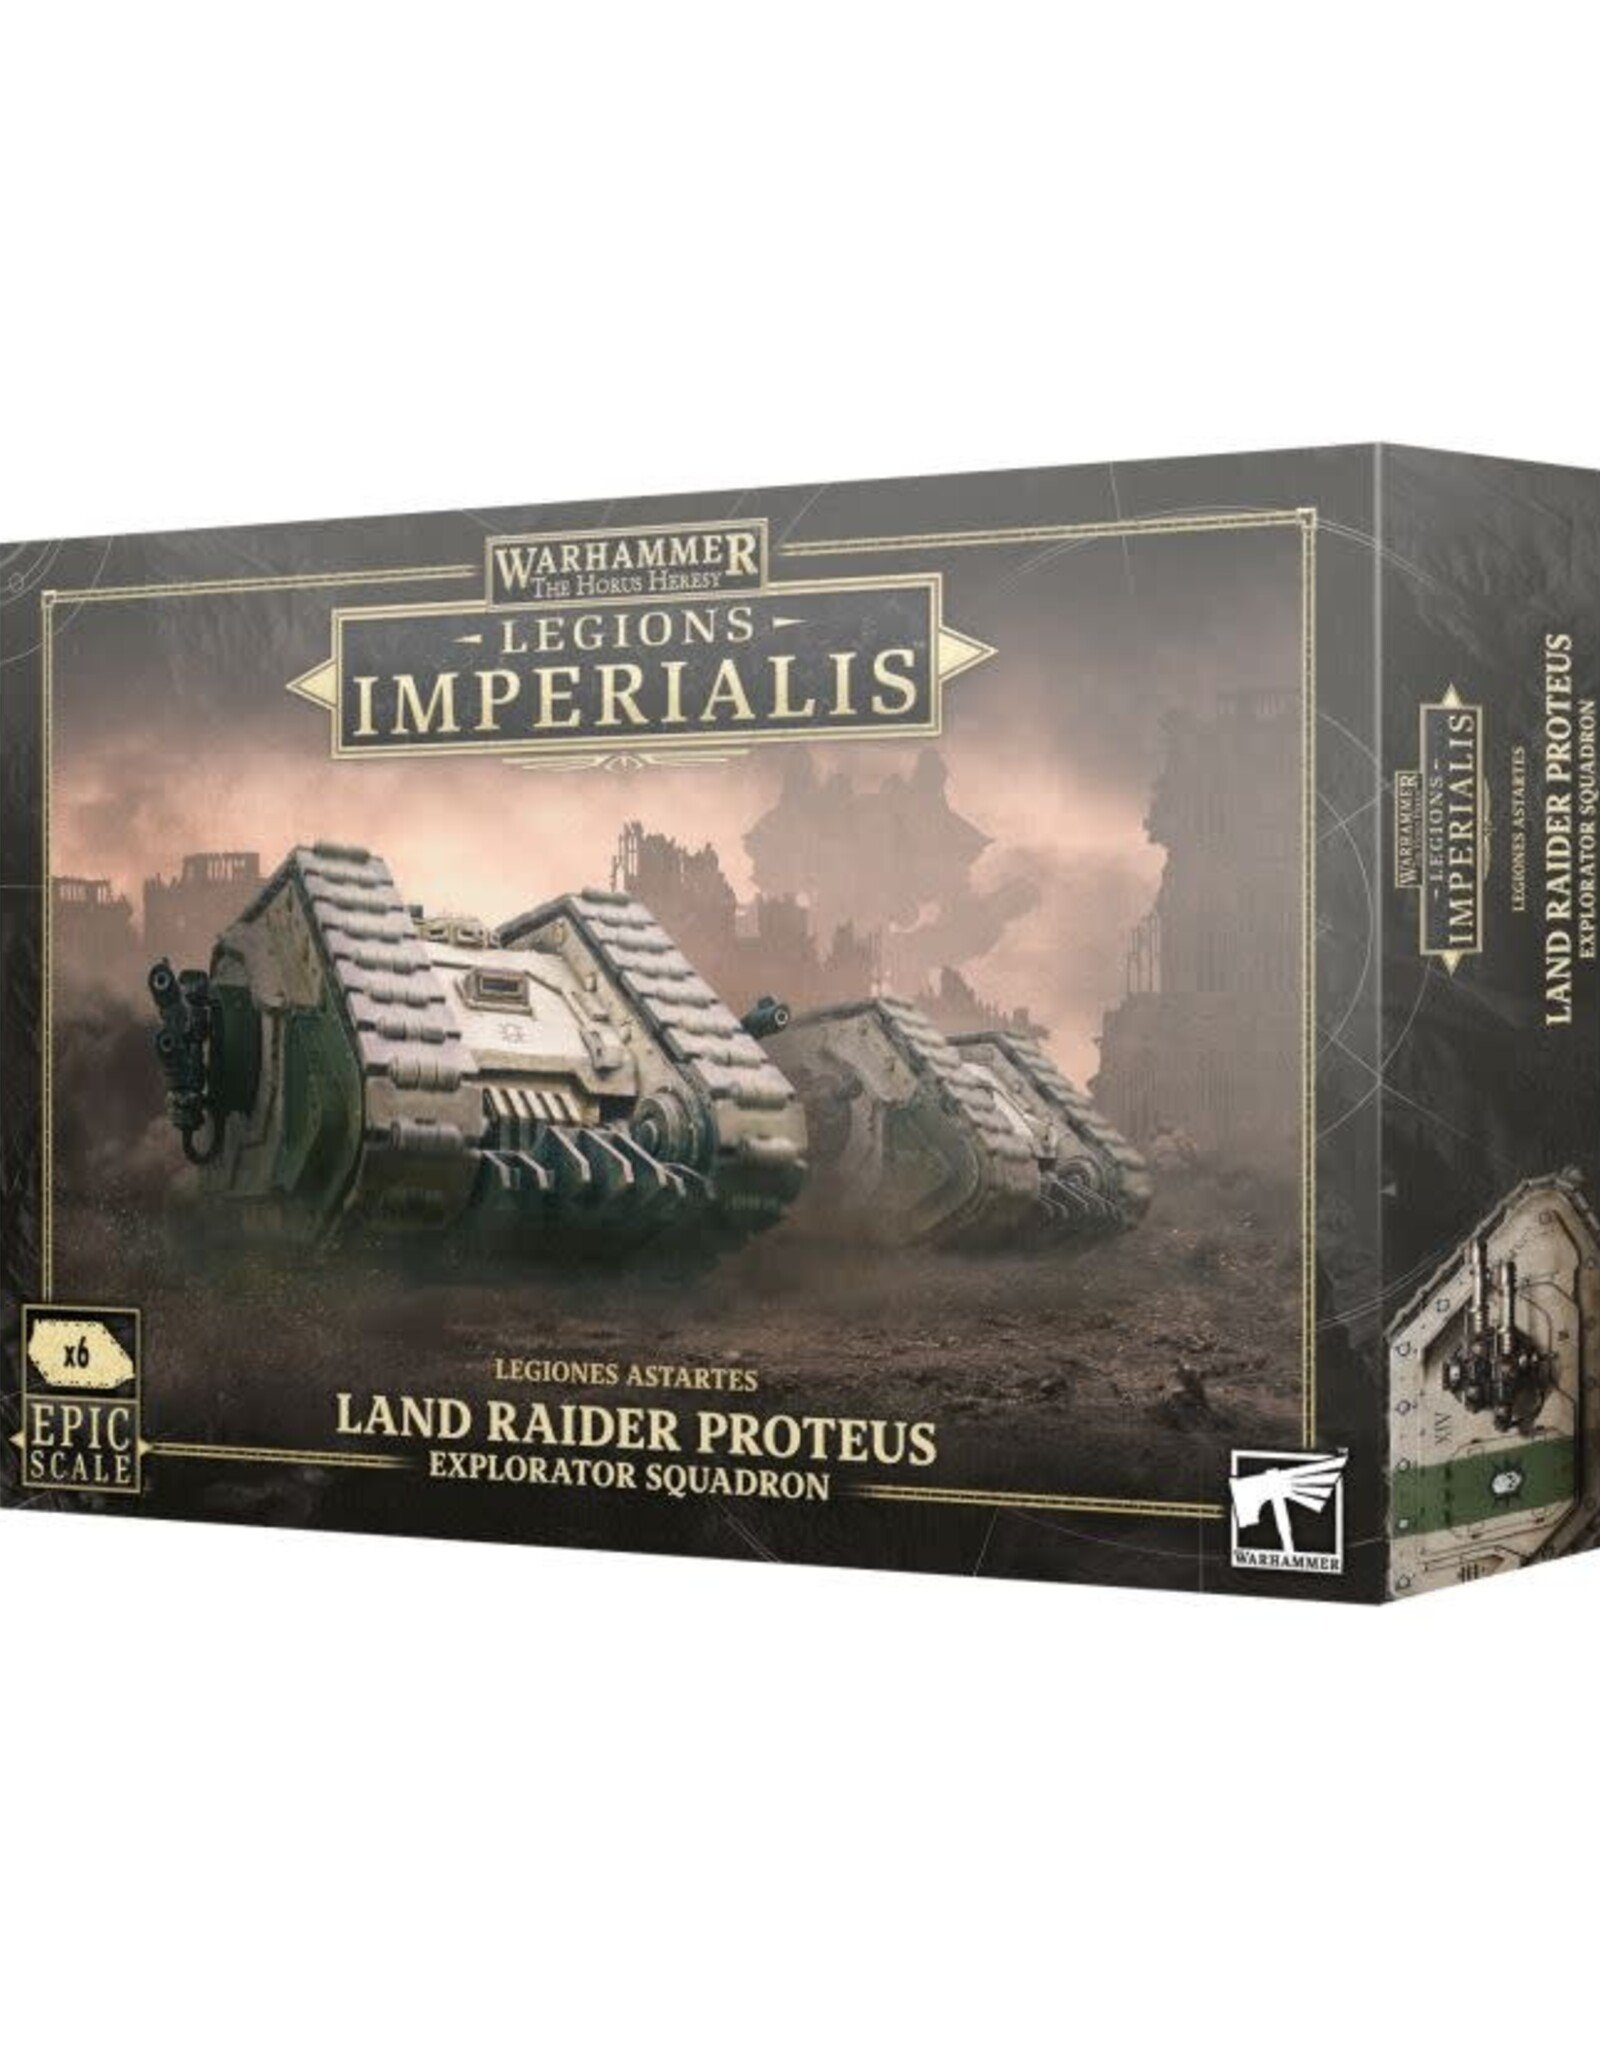 Legions Imperialis Imperialis: Land Raider Proteus